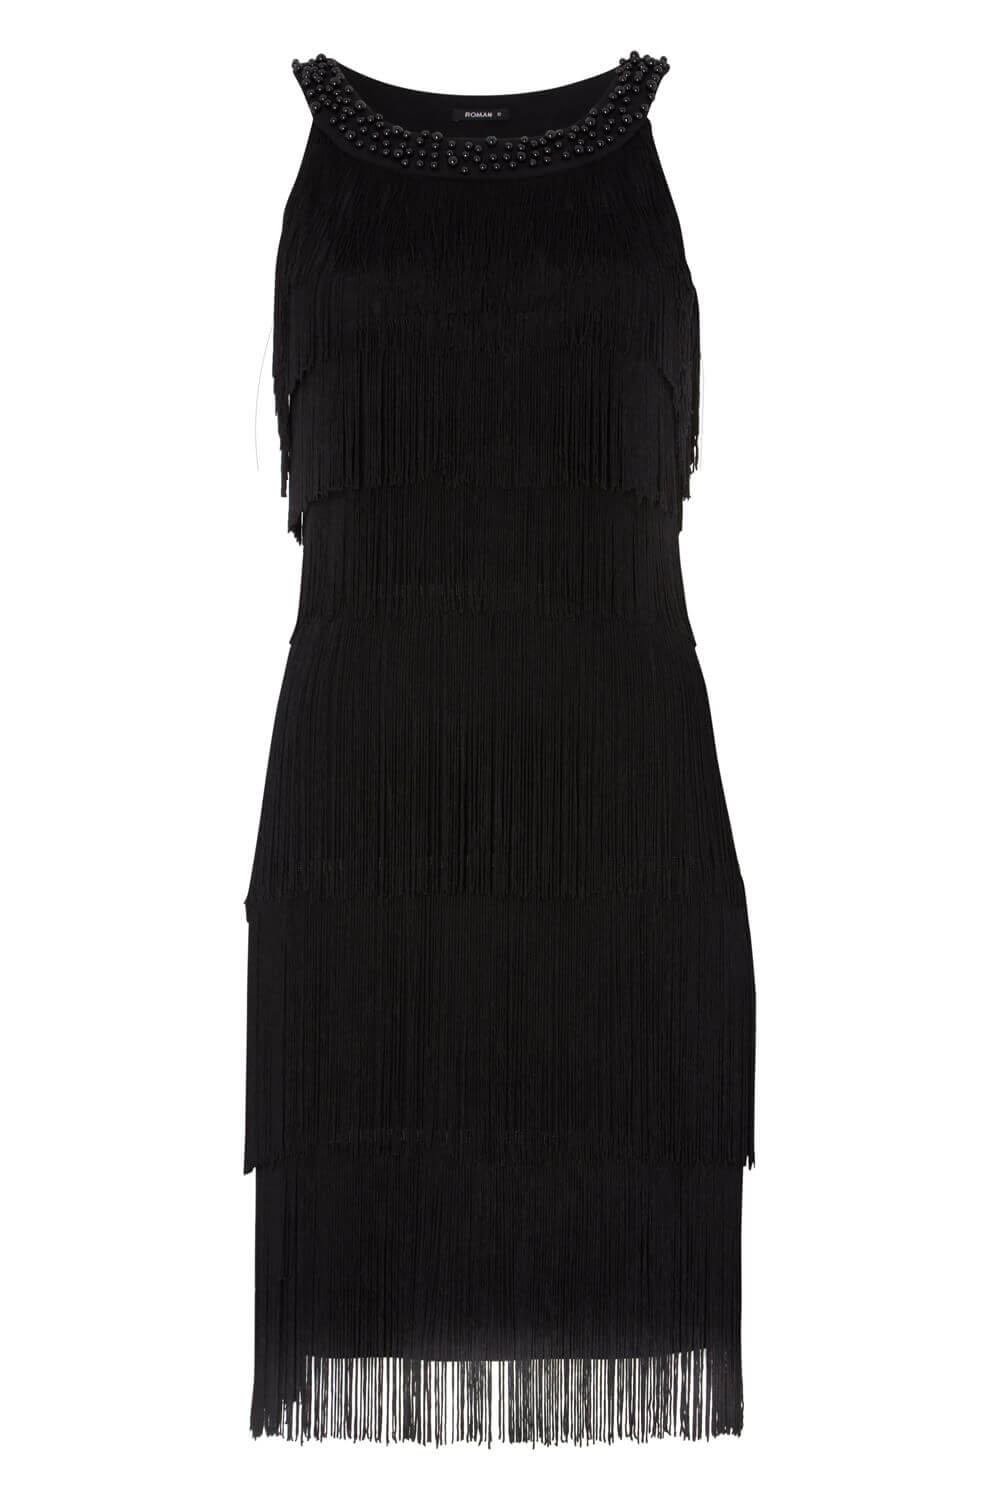 Tassel Embellished Flapper Dress in Black - Roman Originals UK